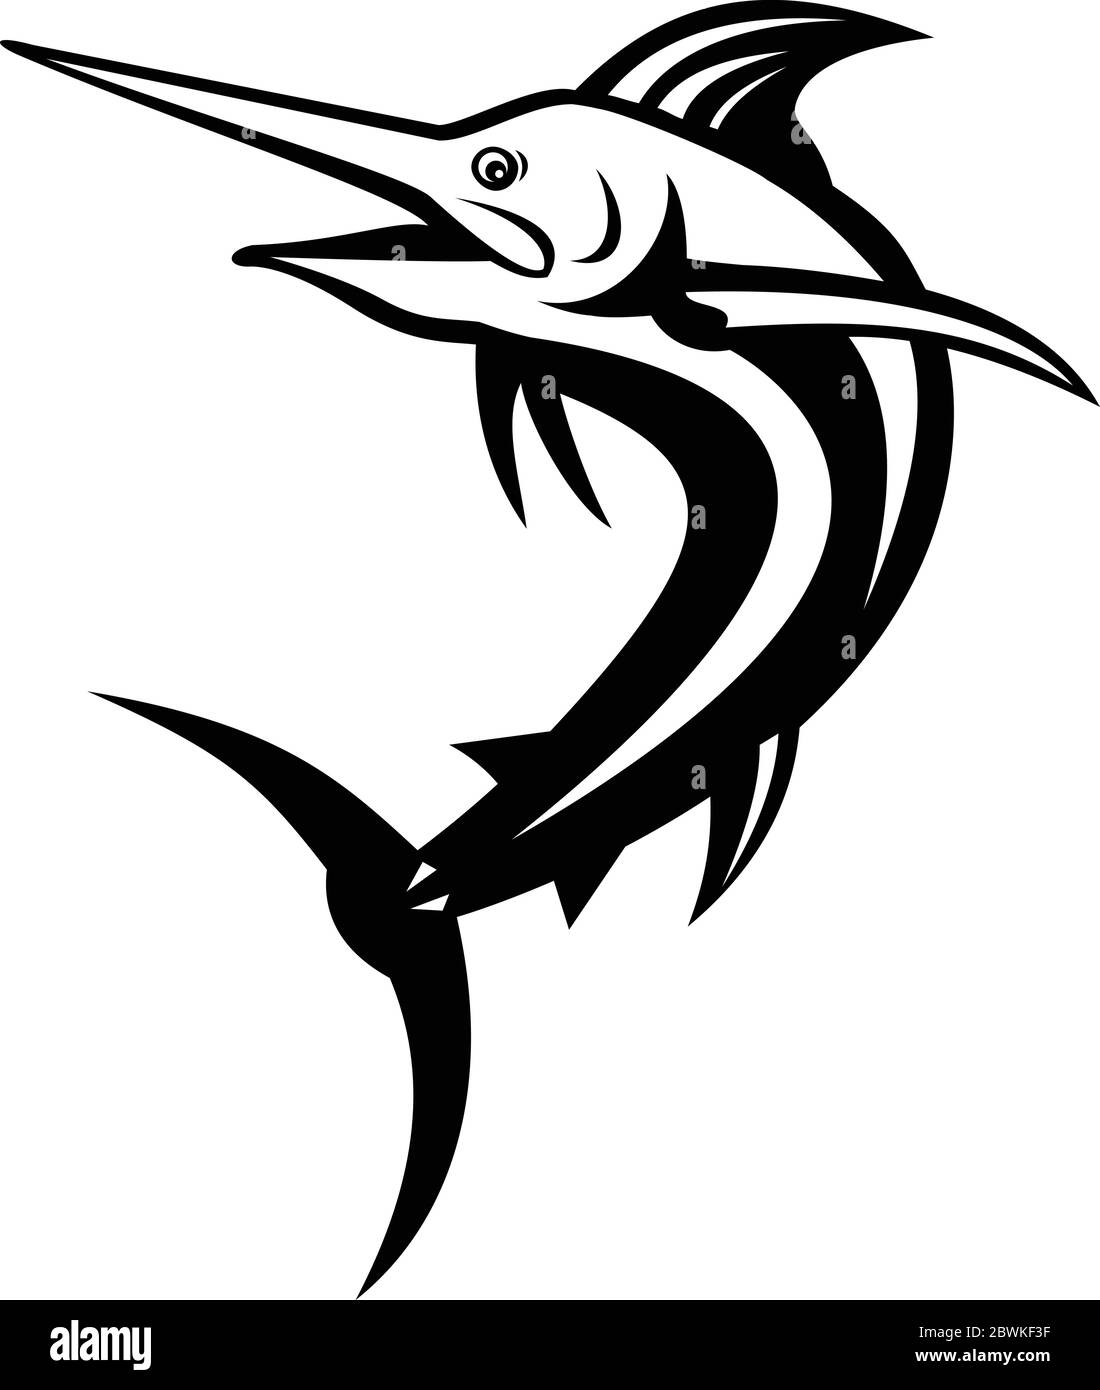 Ilustración de estilo retro de una aguja azul del Atlántico, una especie de aguja endémica del Océano Atlántico, saltando en blanco y negro sobre aislado Ilustración del Vector